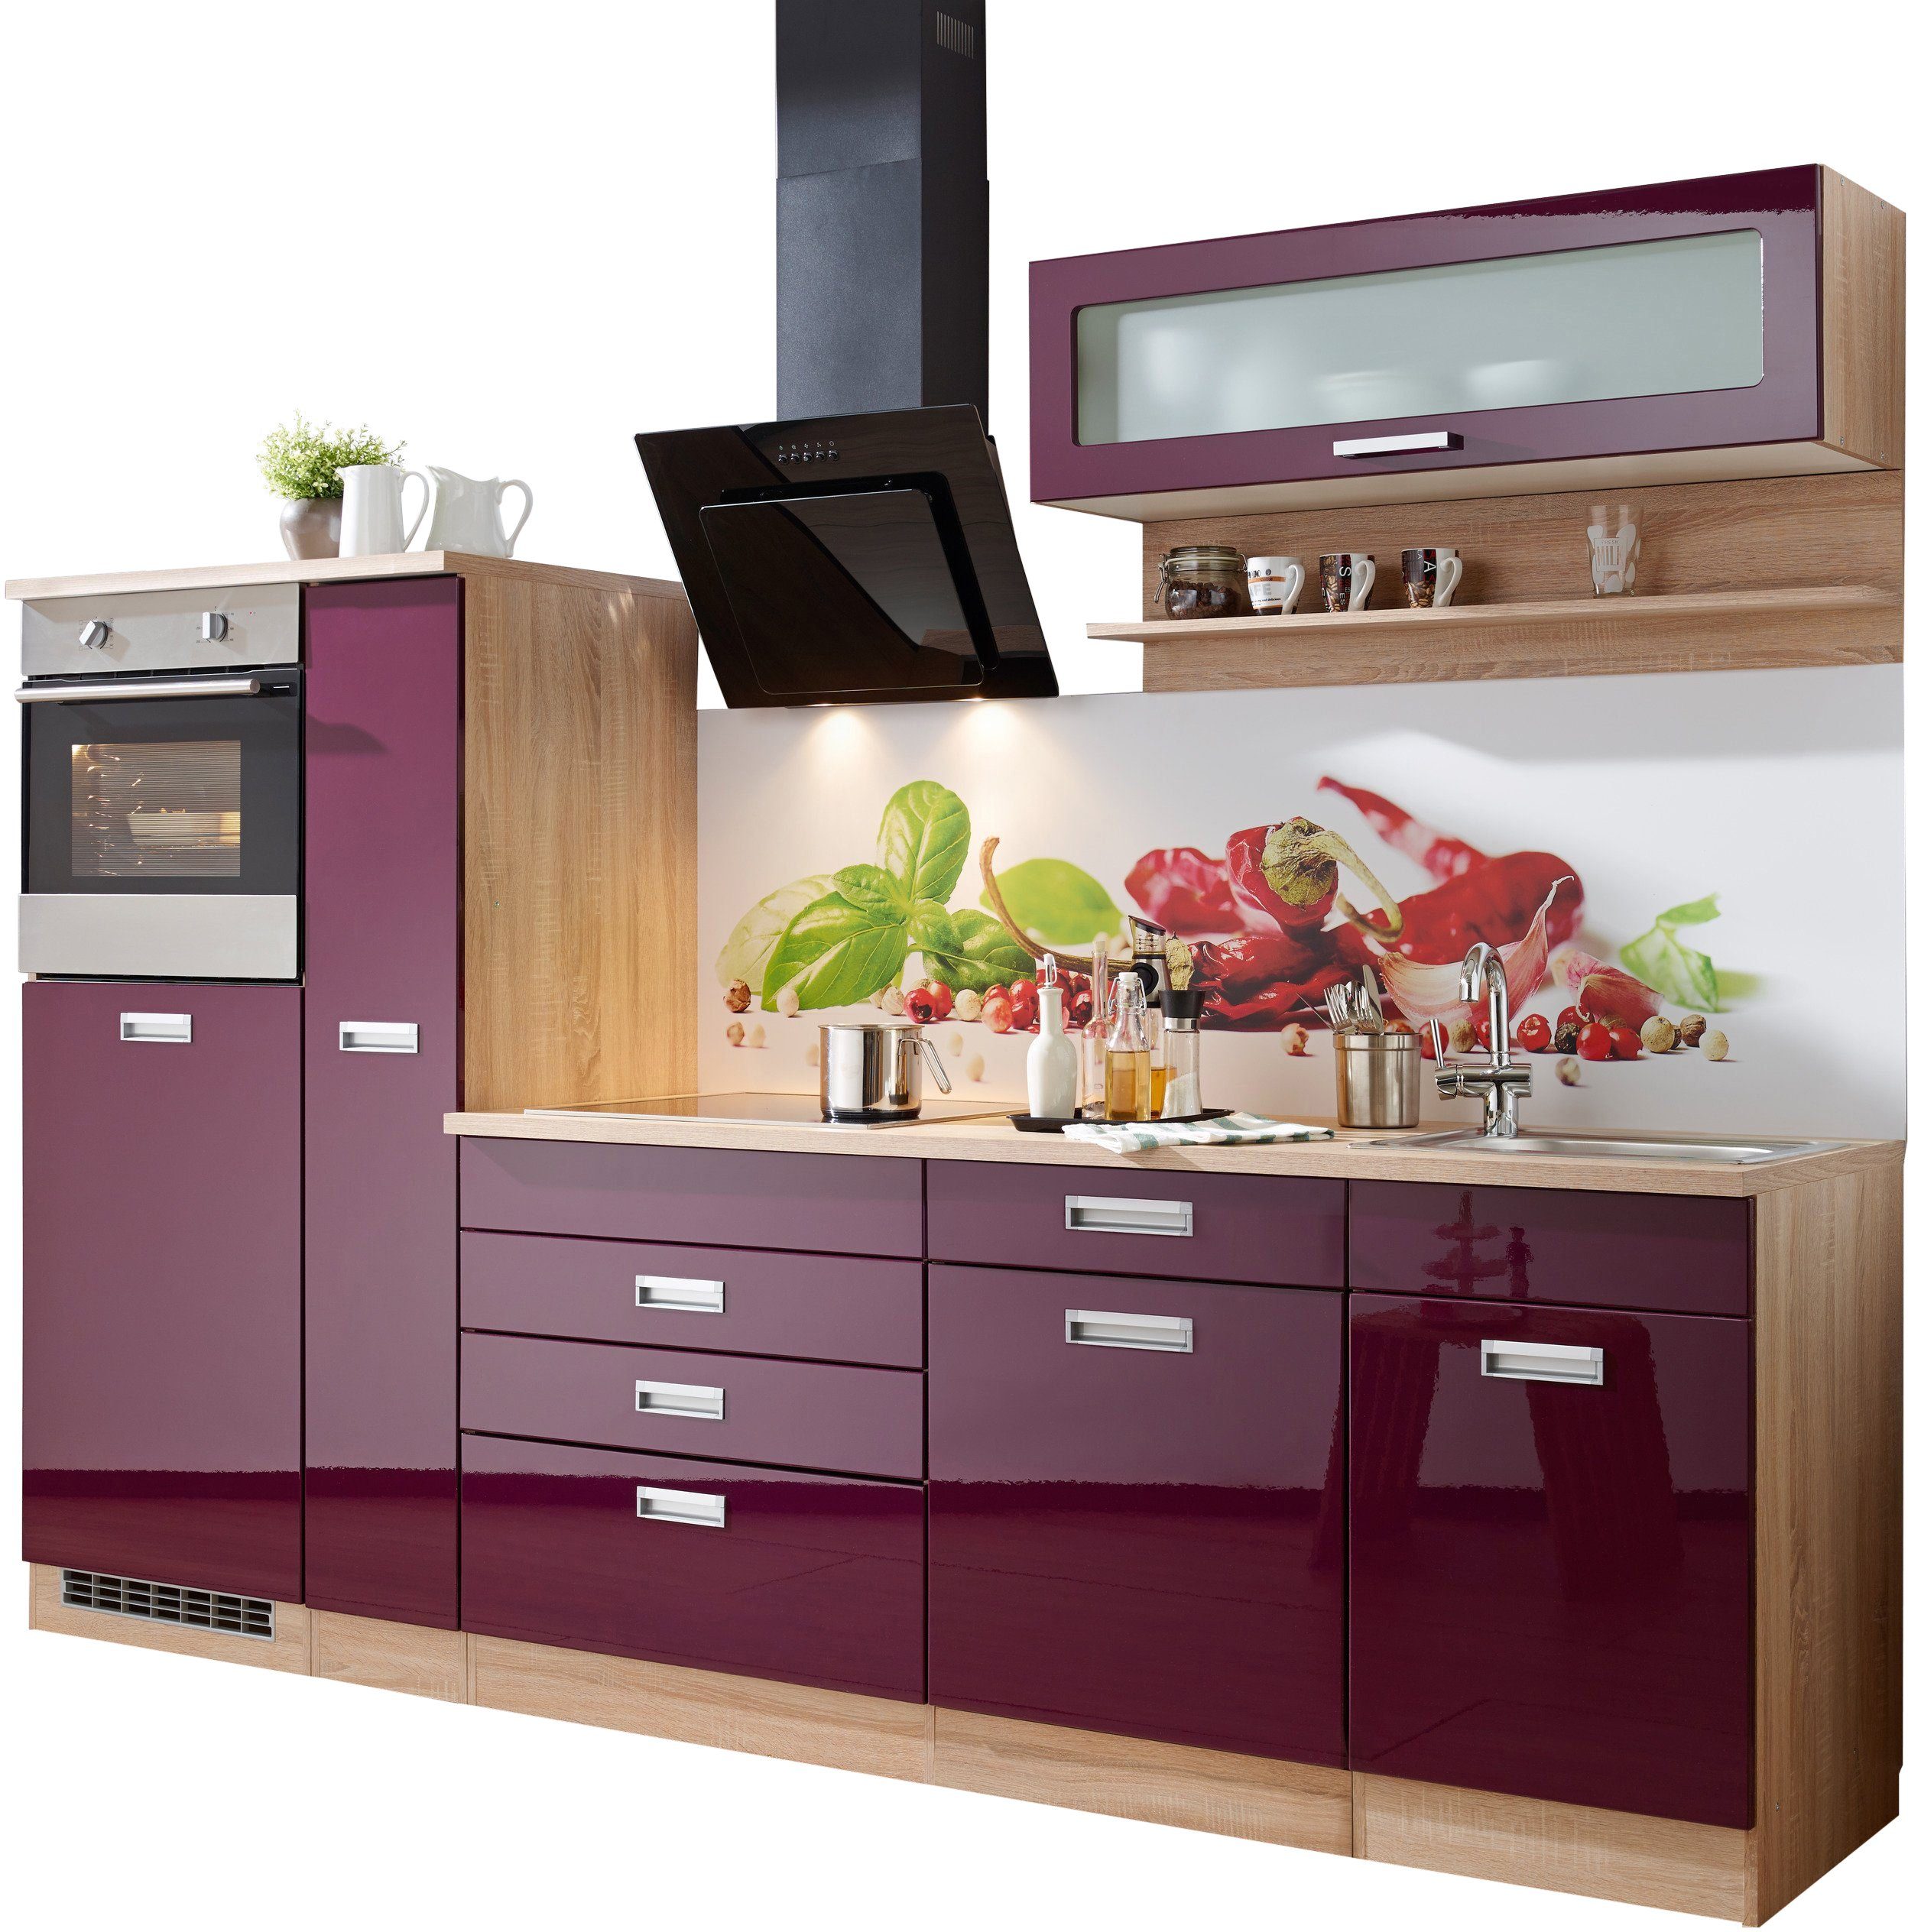 HELD MÖBEL Küchenzeile Fulda, mit E-Geräten, Breite 270 cm, Fronten mit  eingelassener Aluminium Griffleiste